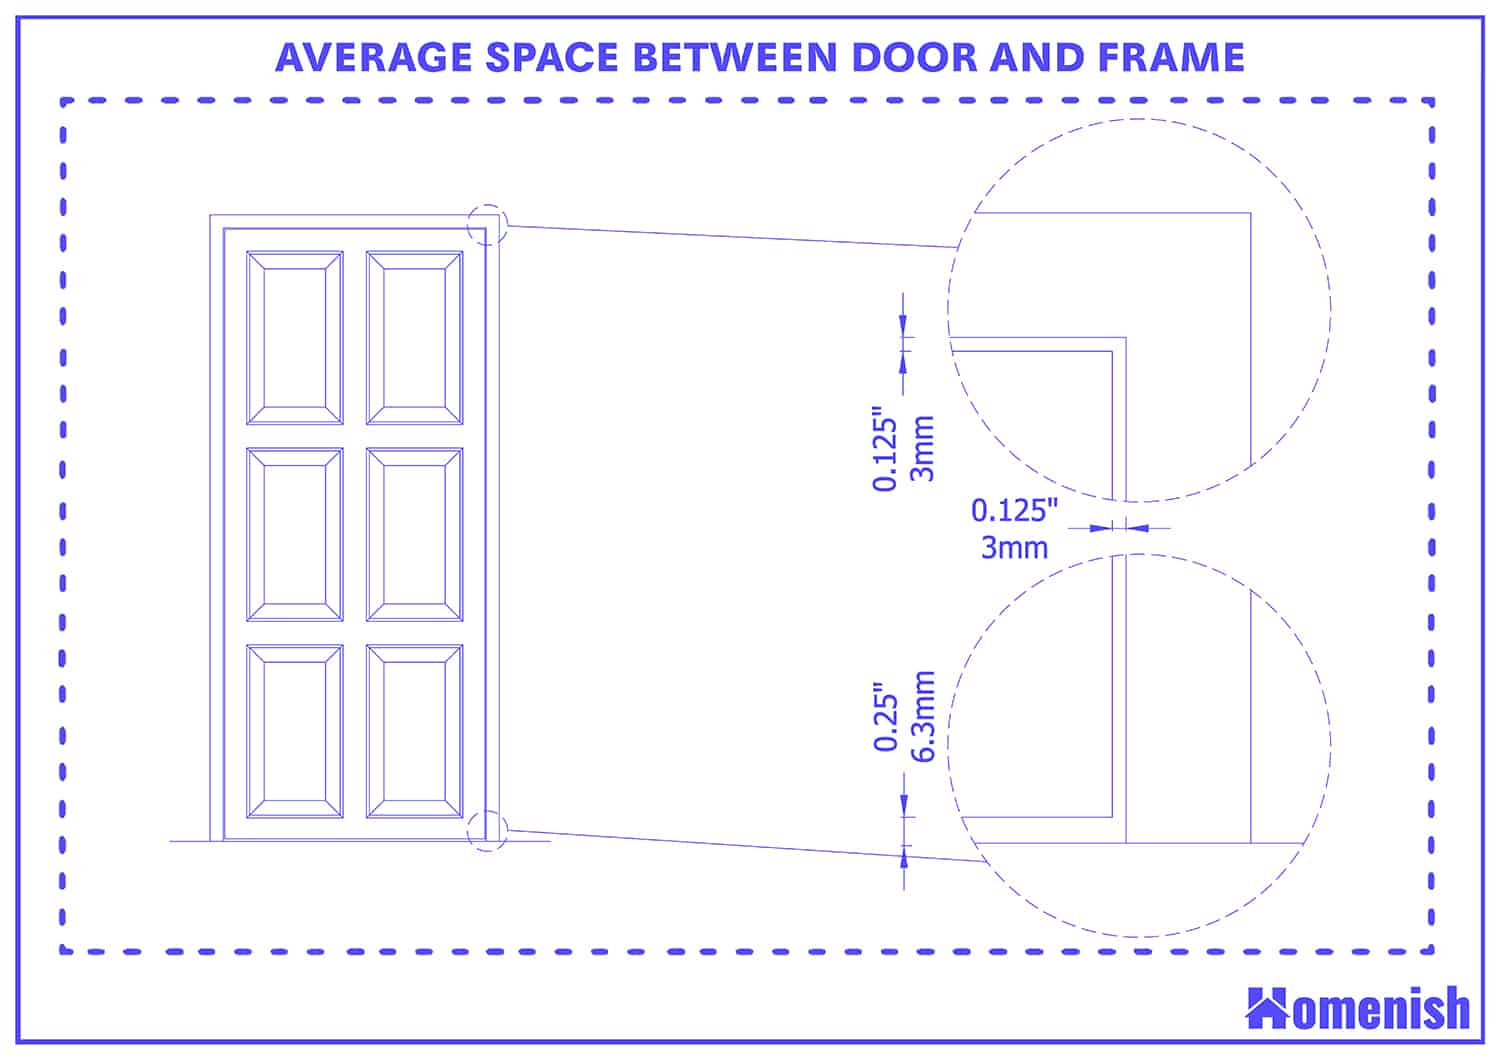 門和框架之間的平均空間